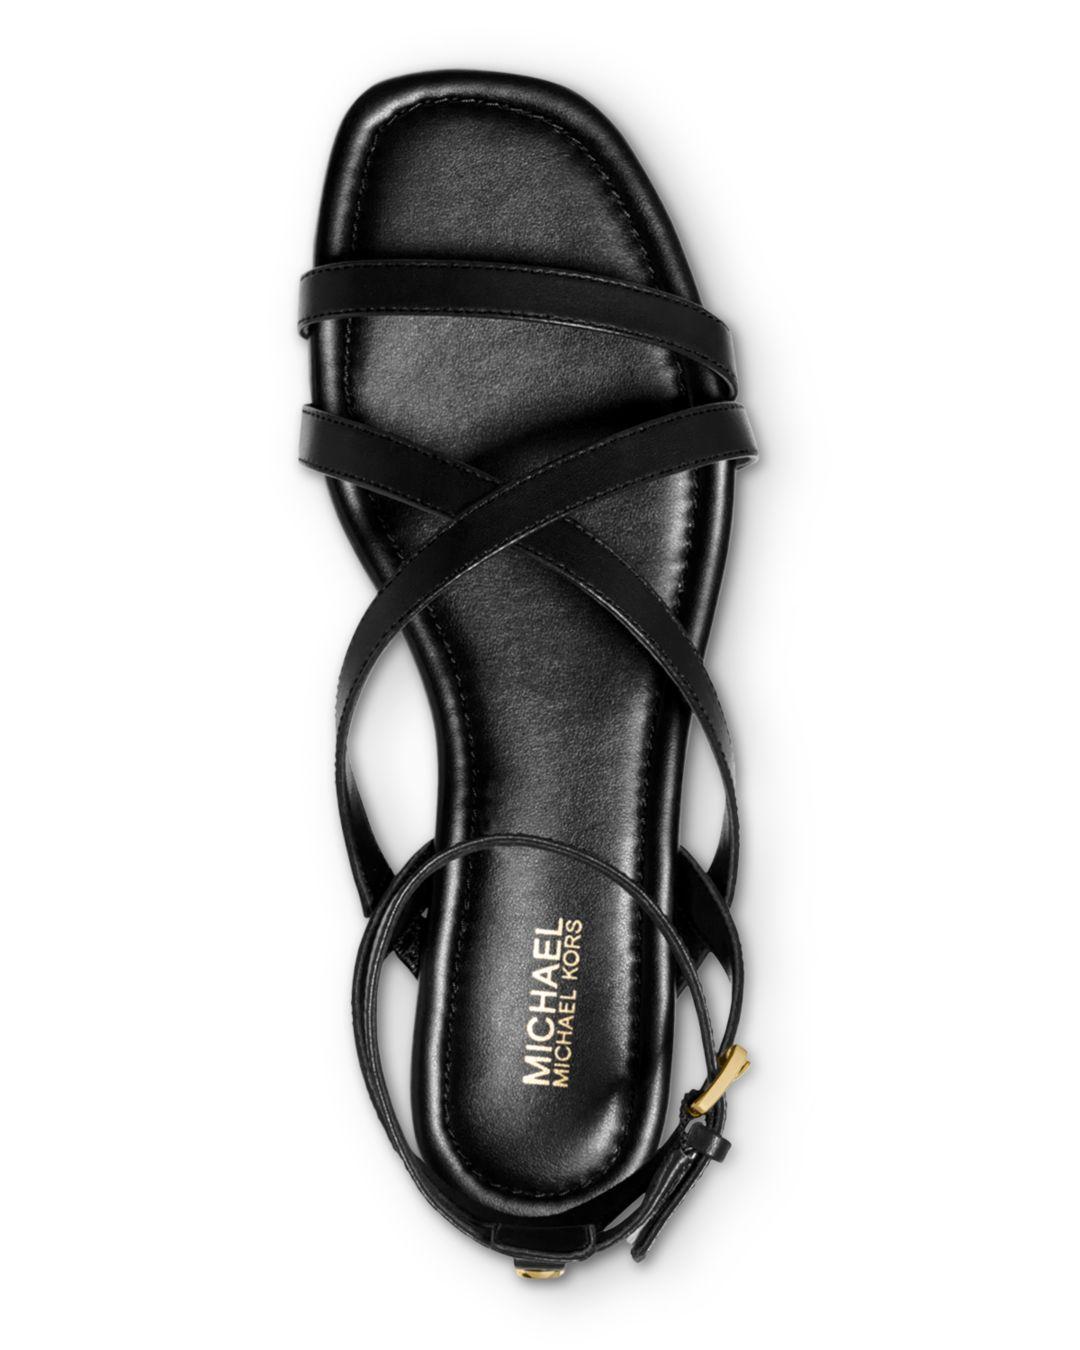 Michael Kors Tasha Leather Sandal in Black - Save 65% - Lyst